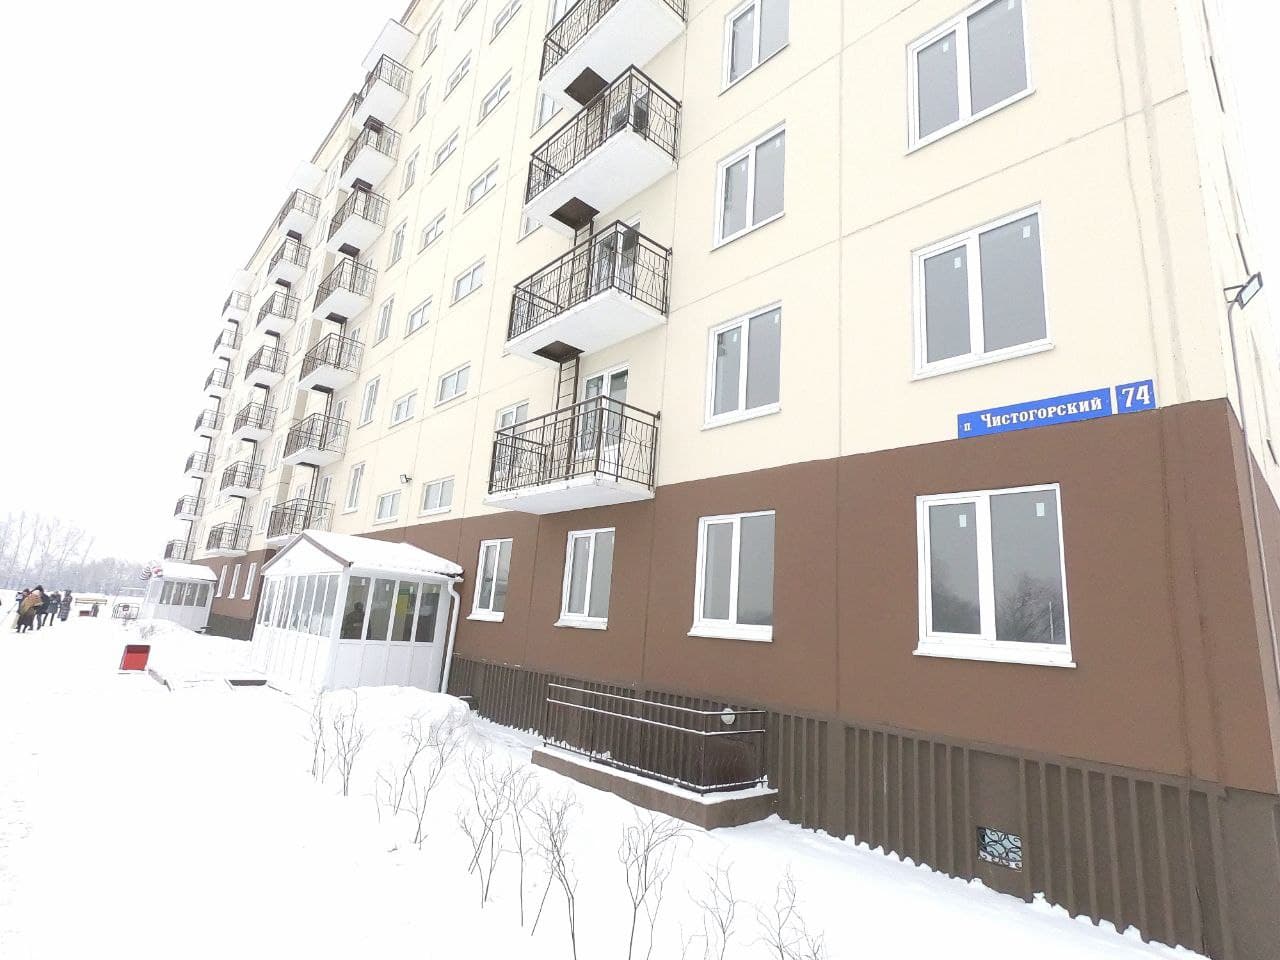 В поселке Чистогорский Новокузнецкого района заселили 96-квартирный дом для льготных категорий граждан